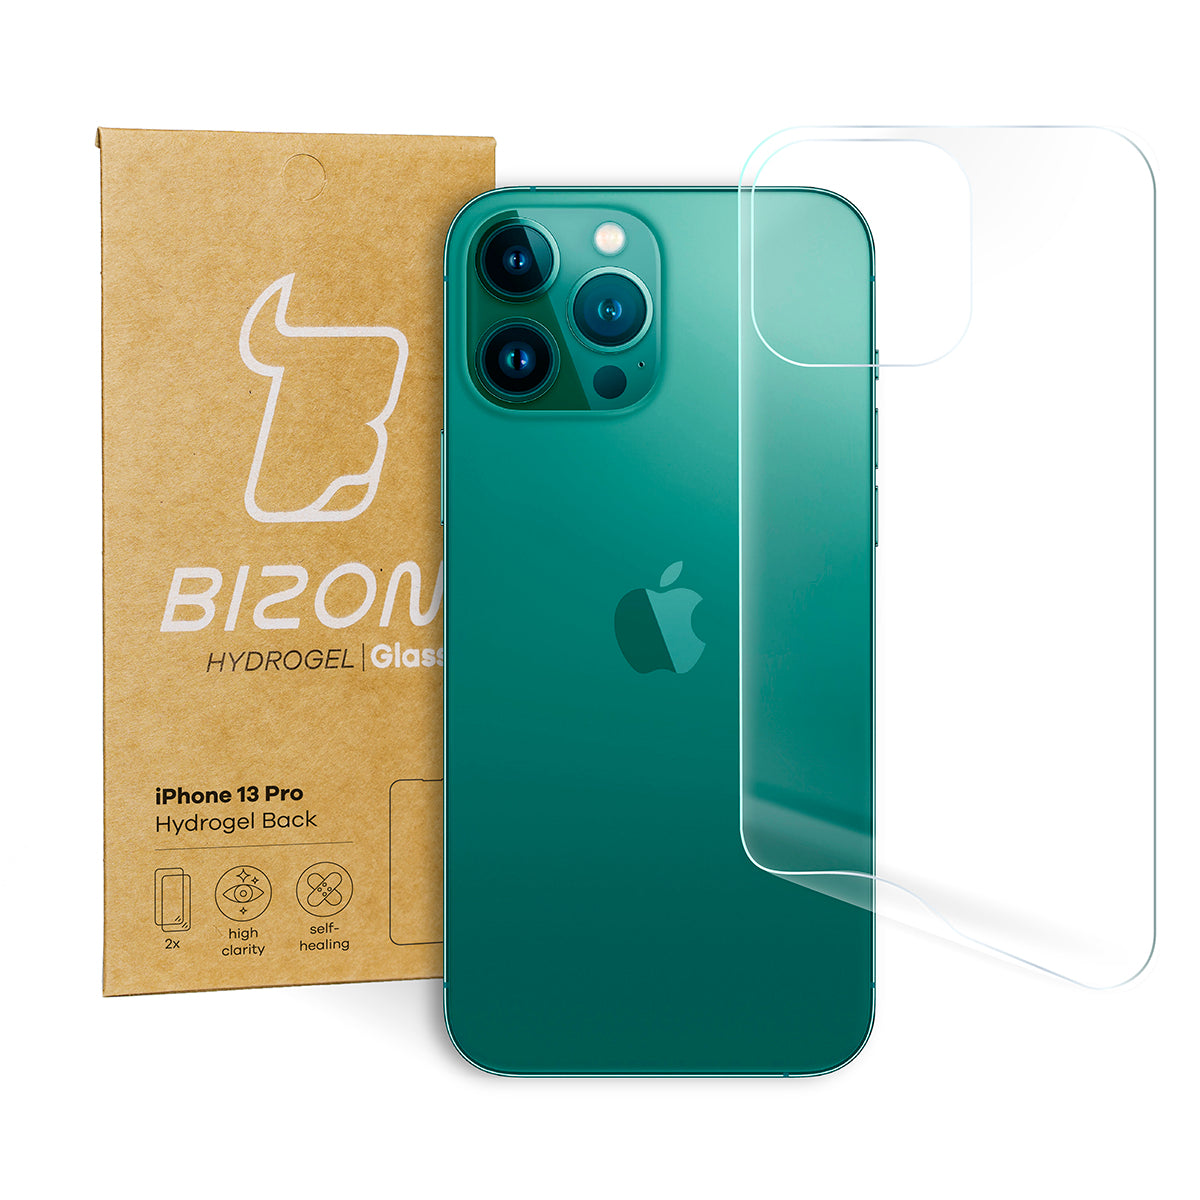 Hydrogel Folie für die Rückseite Bizon Glass, iPhone 13 Pro, 2 Stück